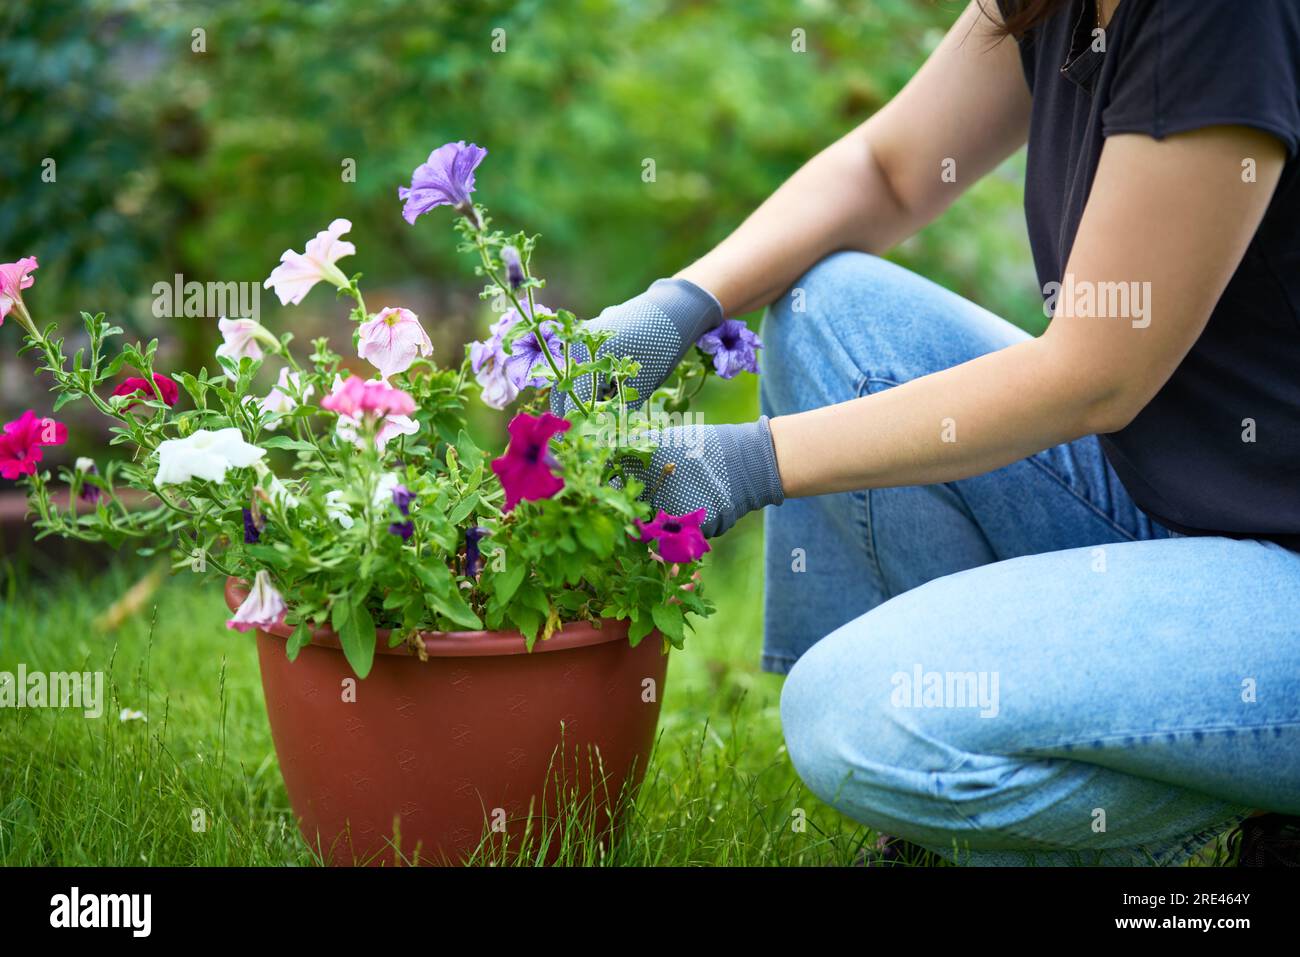 Immagine ritagliata di una donna che piantava fiori in giardino, foto ravvicinata. Giardinaggio e floricoltura. Concetto di cura dei fiori Foto Stock